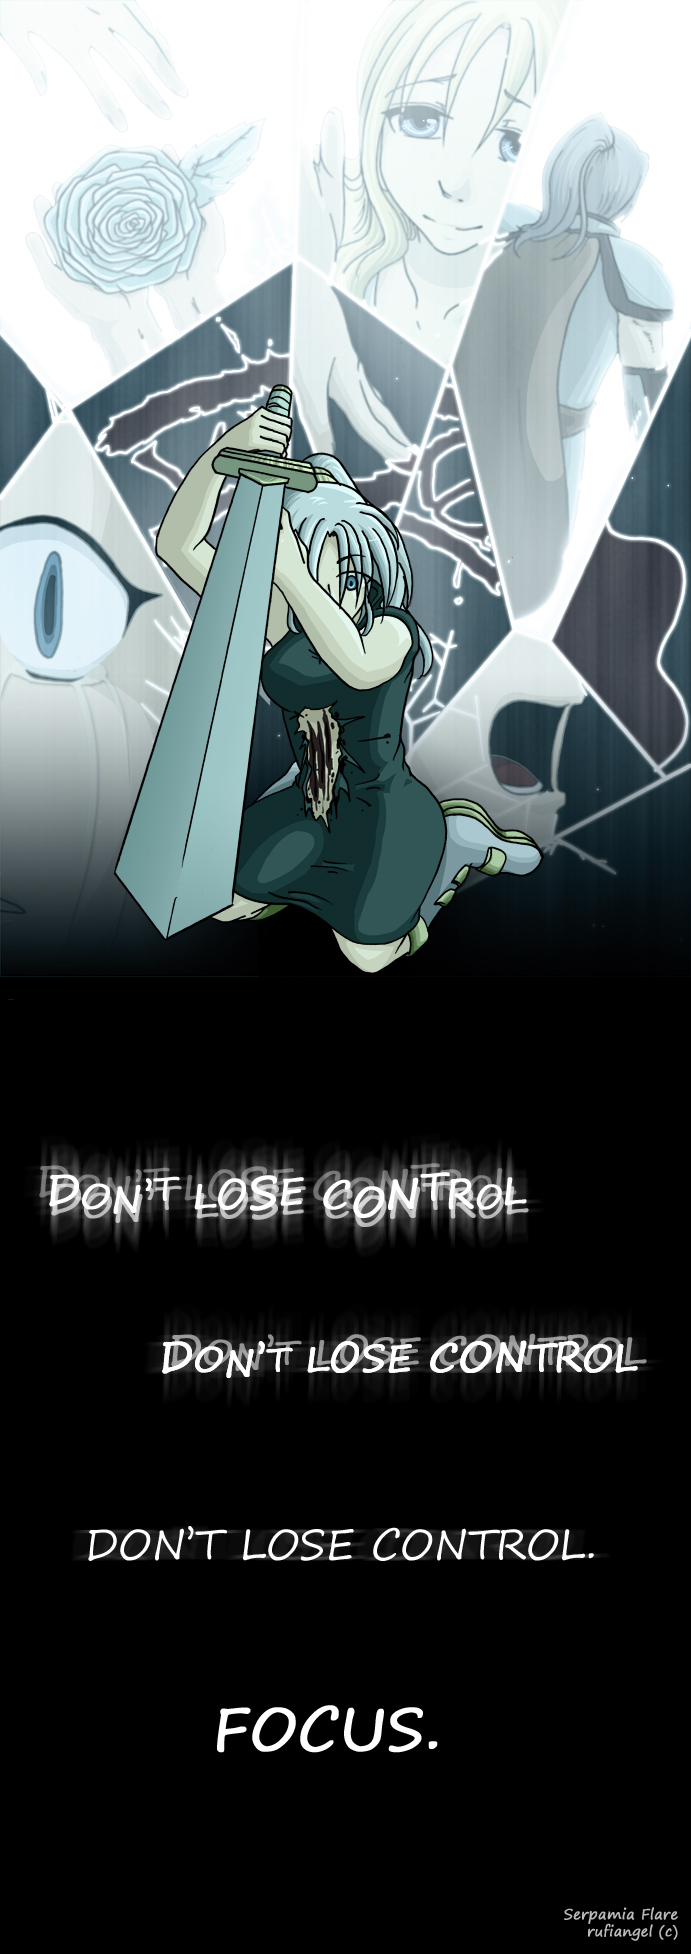 059 - Don't lose control